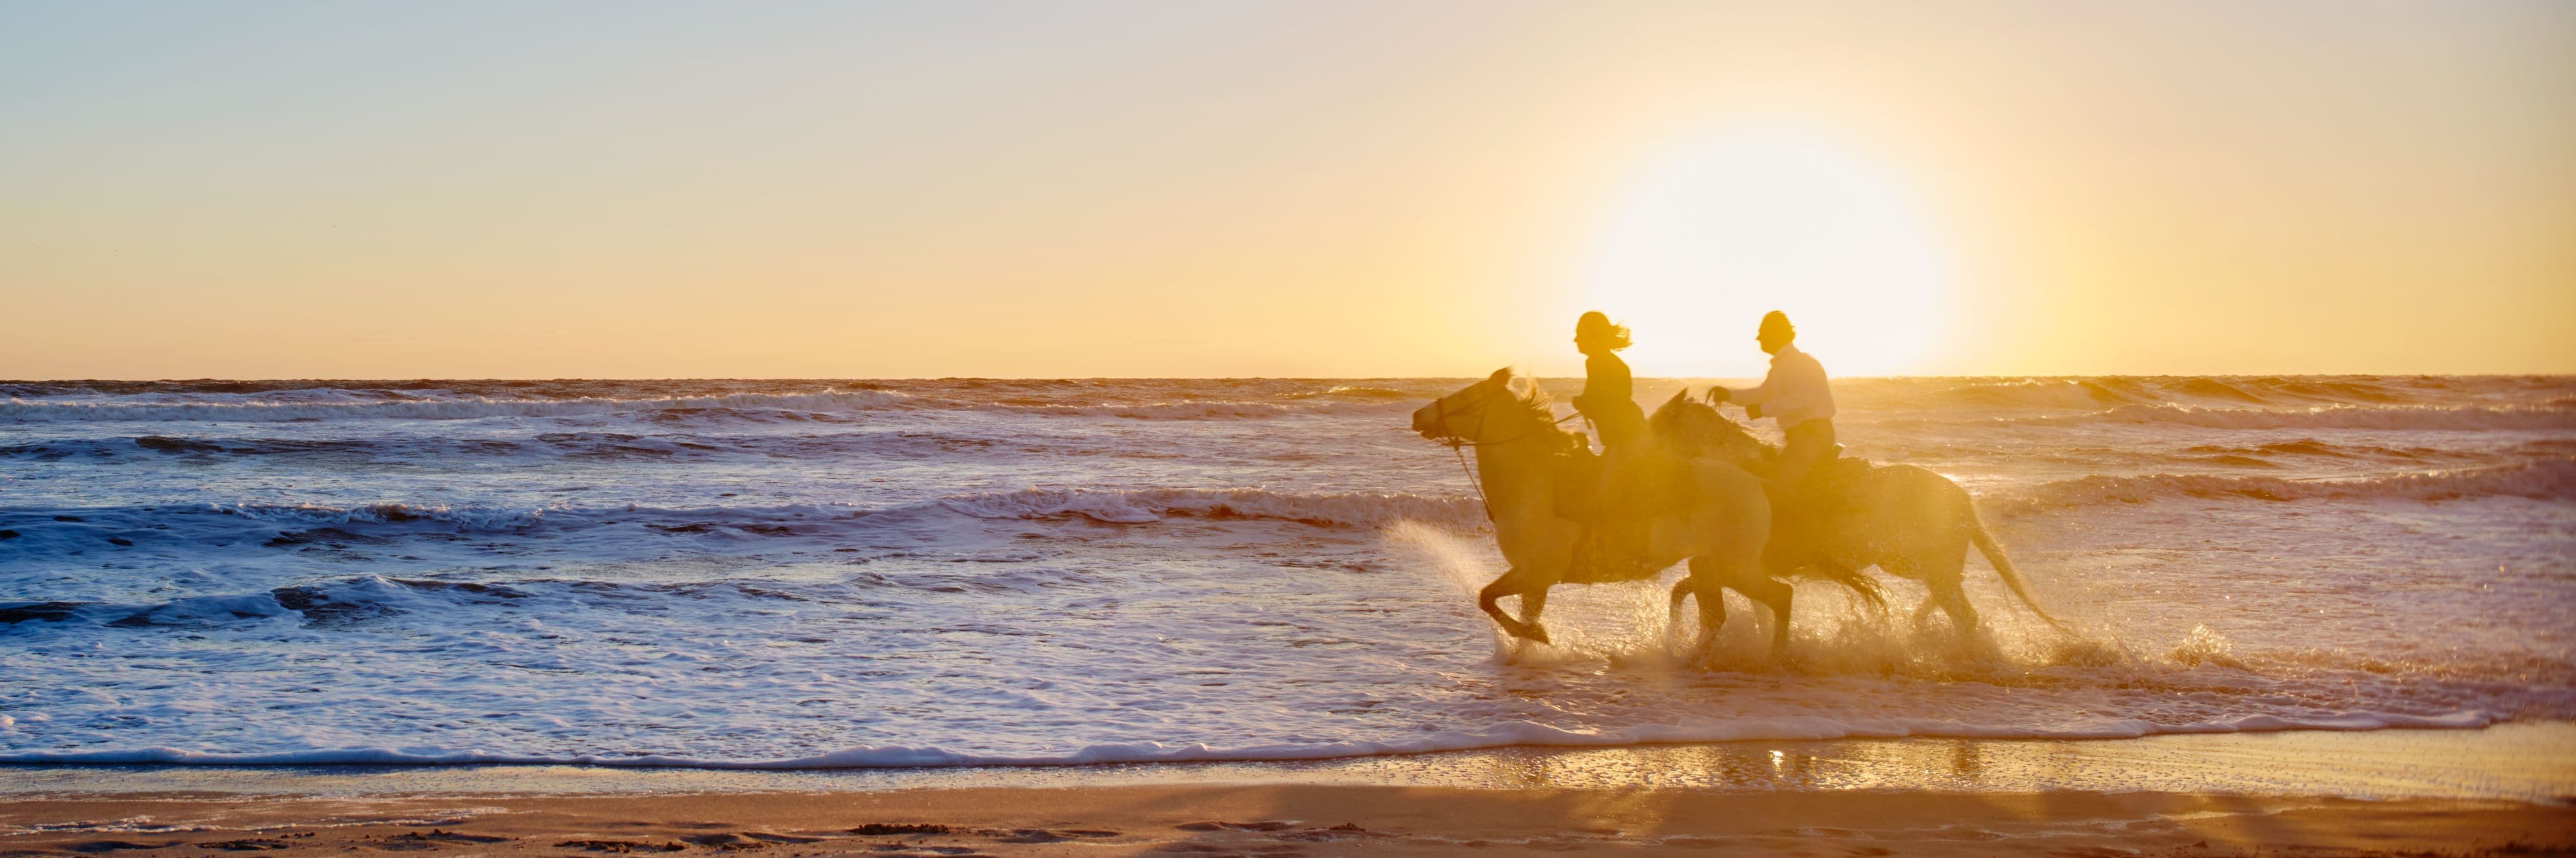 Amelia Island Horseback Riding